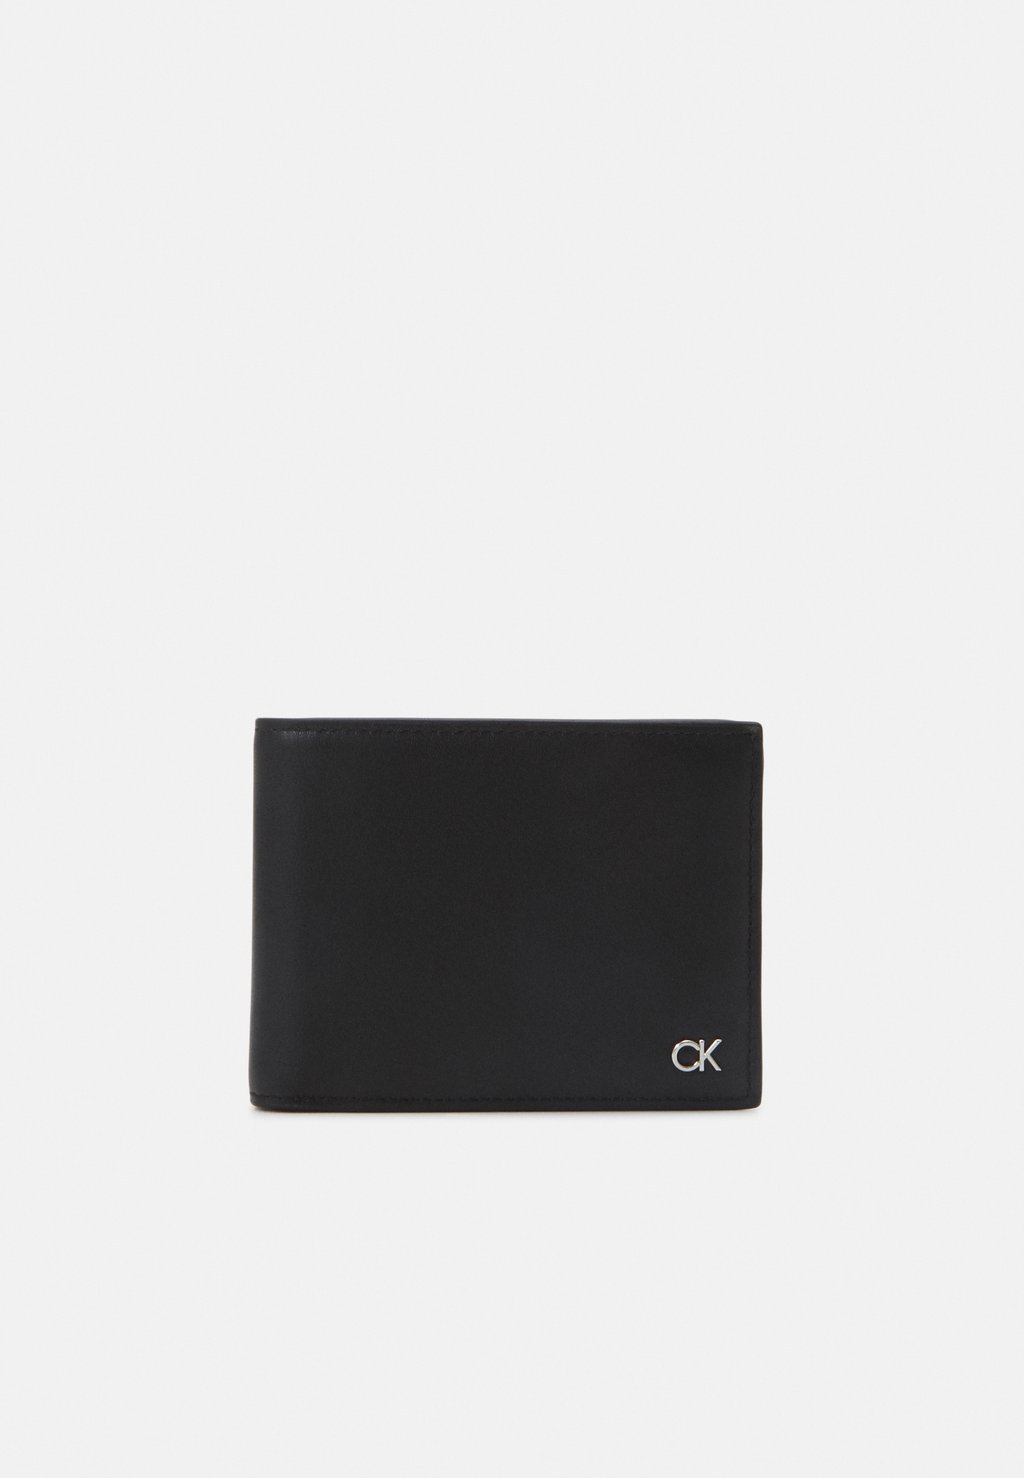 Кошелек TRIFOLD COIN Calvin Klein, цвет black кошелек mini quilt small trifold calvin klein цвет black